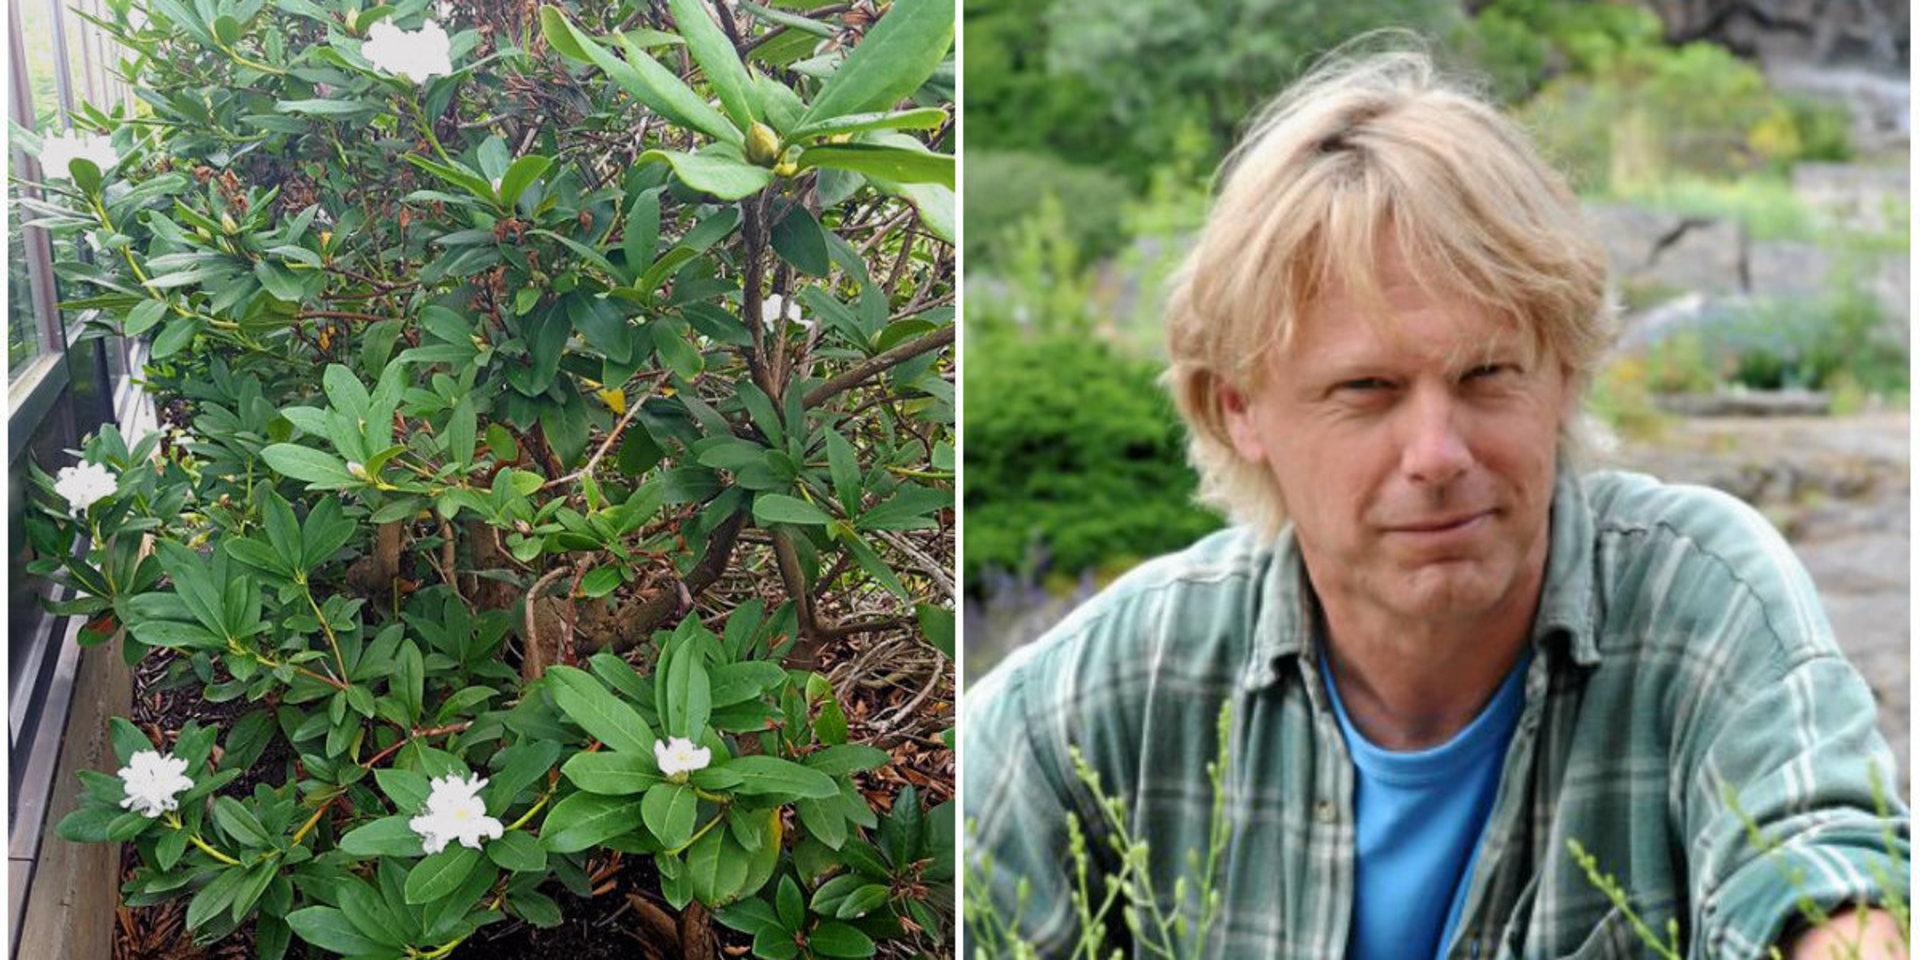 Slitsamt för växter. Rhododendron blommar igen nu på hösten efter värme och regn, säger Mats Havström på Göteborgs botaniska trädgård.